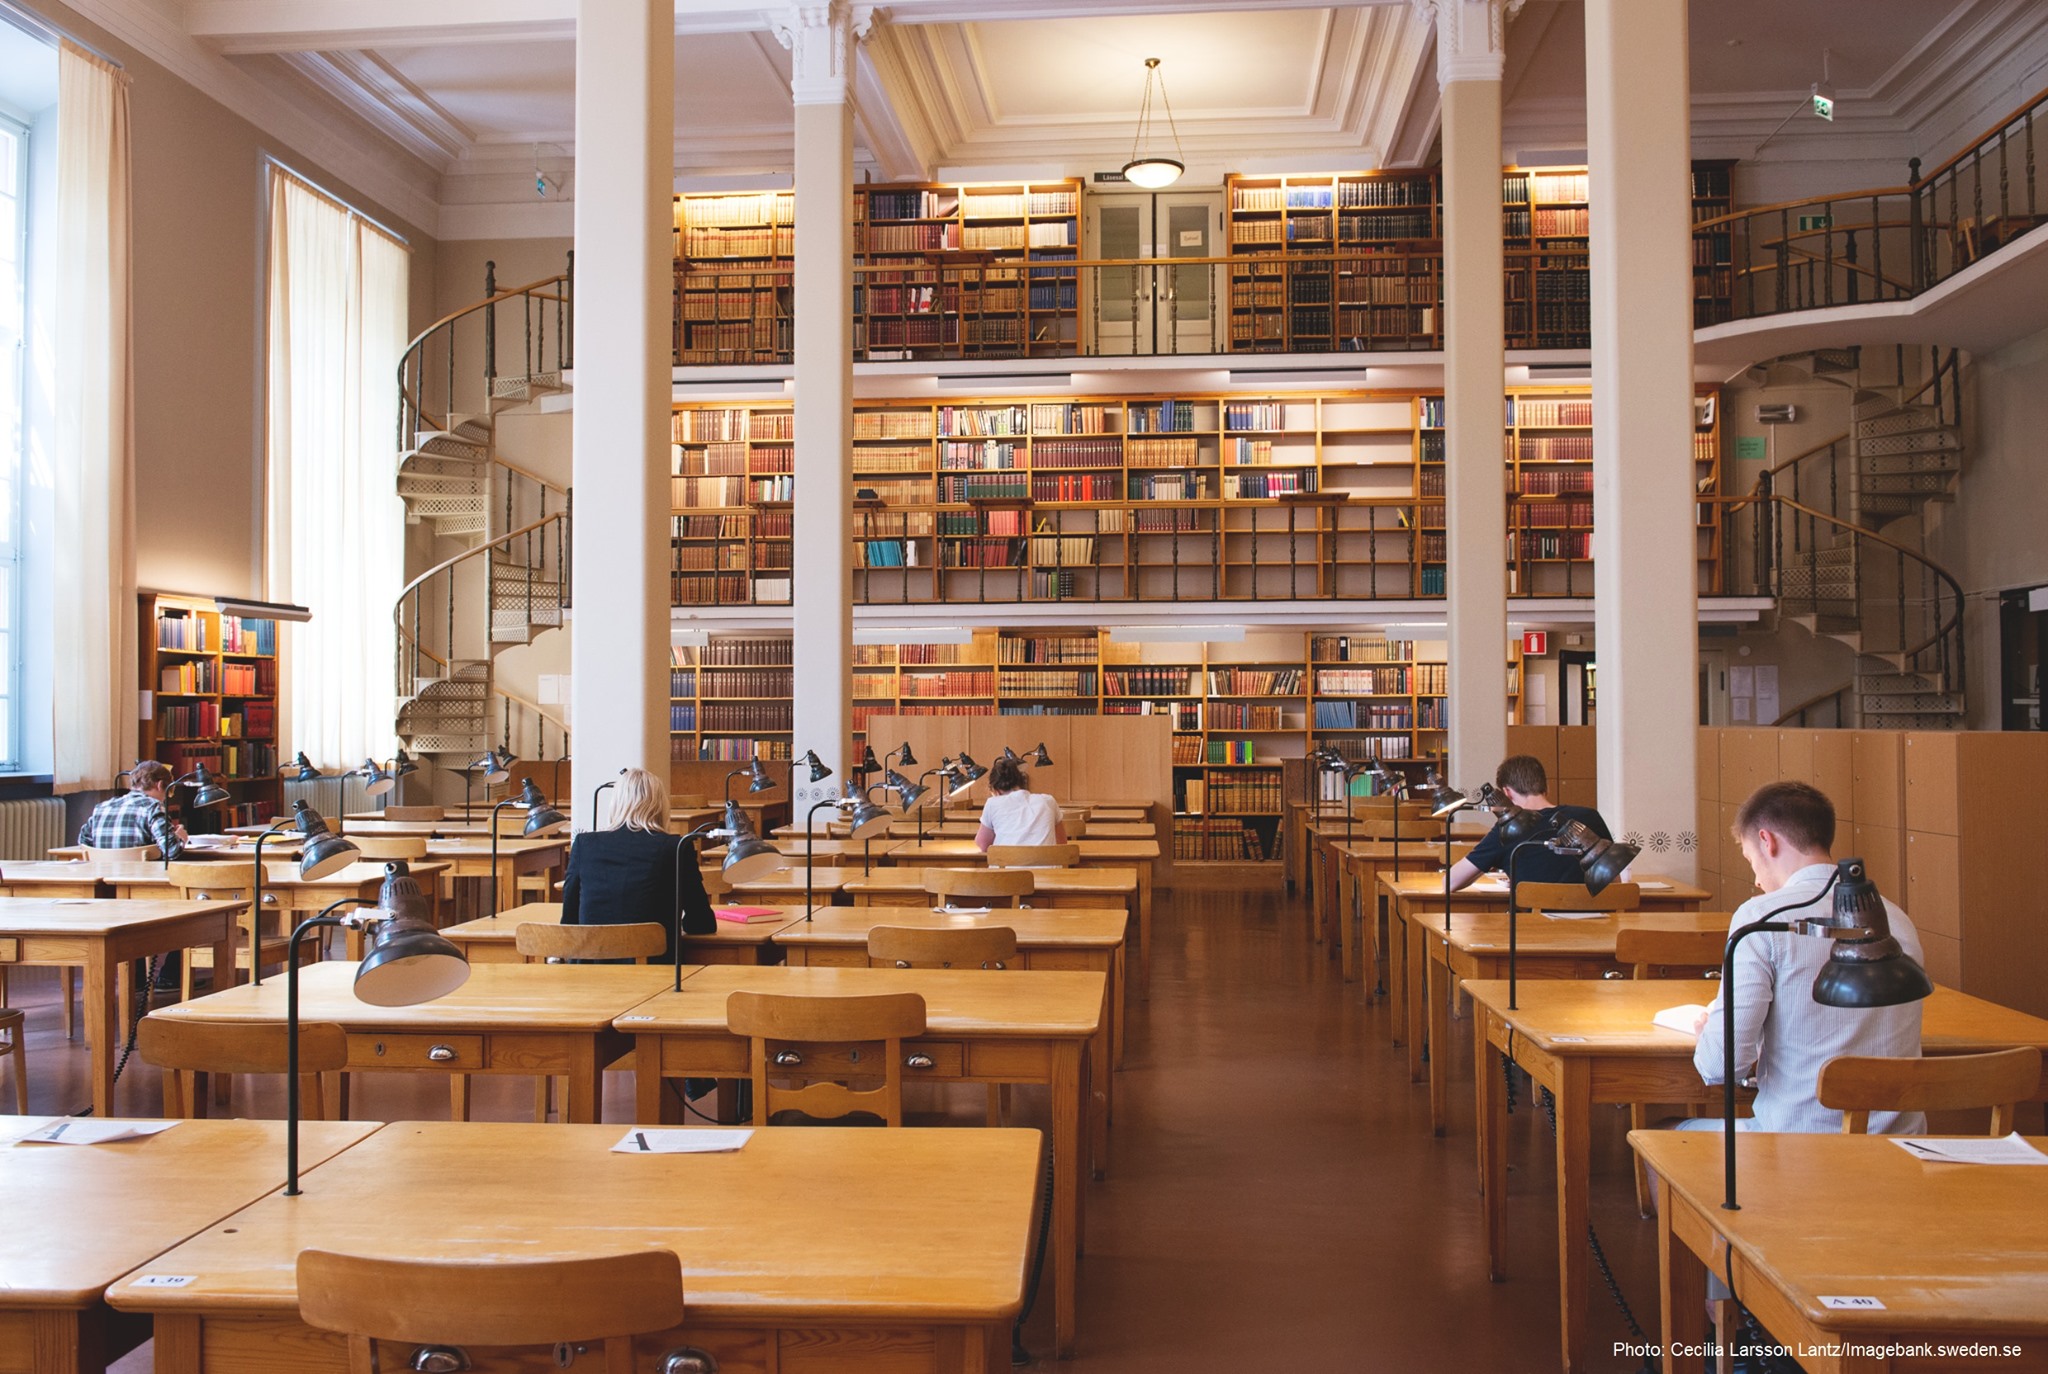 Сайты библиотек университетов. Библиотека Уппсальского университета. Библиотеке Упсальского университета в Швеции.. Библиотека вуза. Библиотека в учебном заведении.